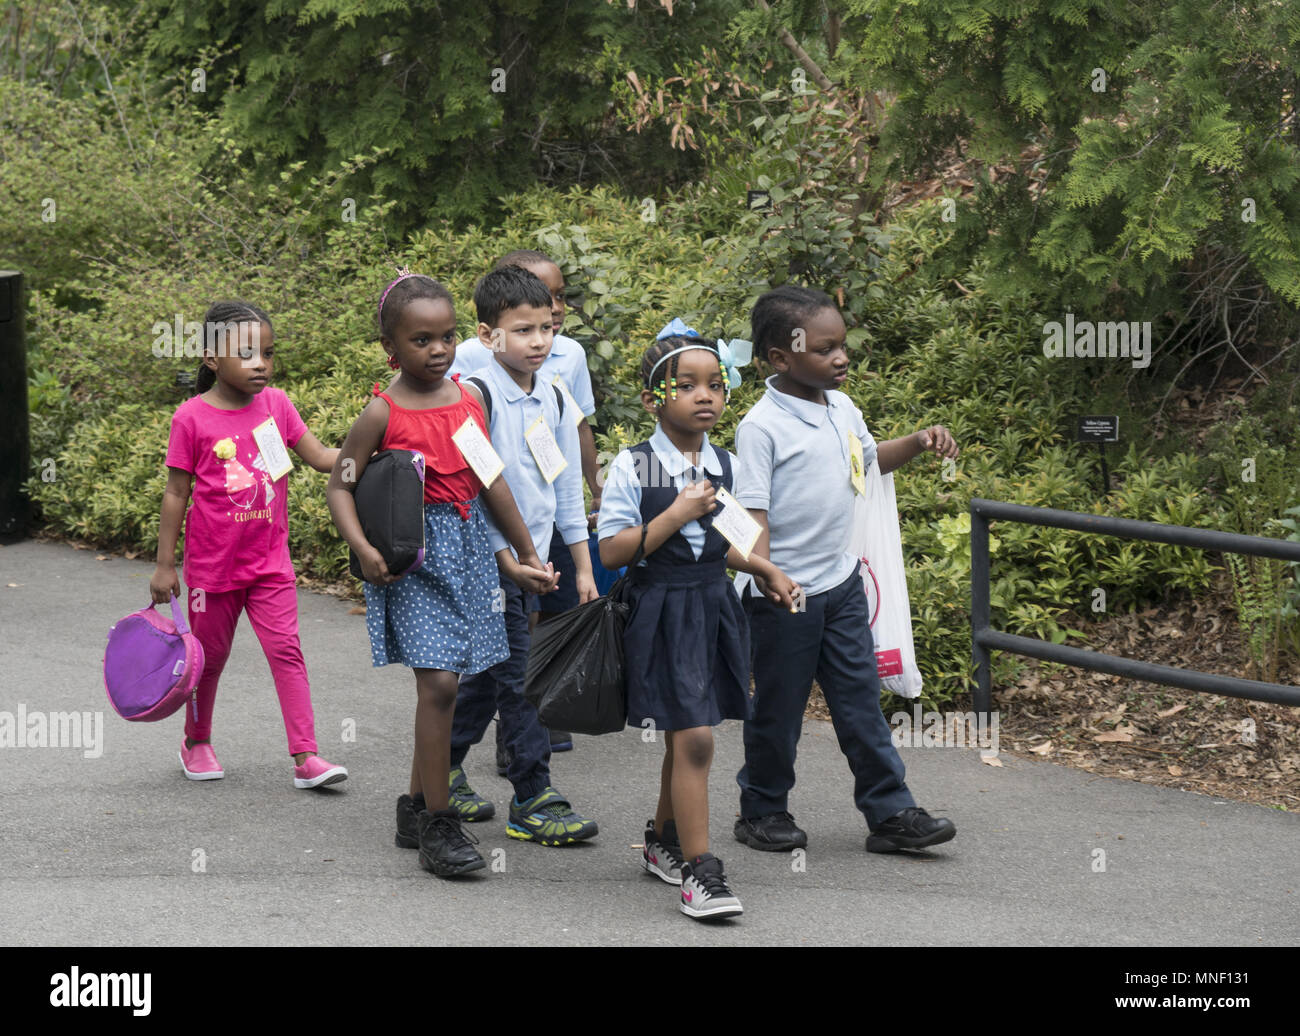 Giovane africana i bambini delle scuole americane a piedi prendendo in le naturali bellezze al Brooklyn Botanic Garden durante una gita a Brooklyn, New York. Foto Stock